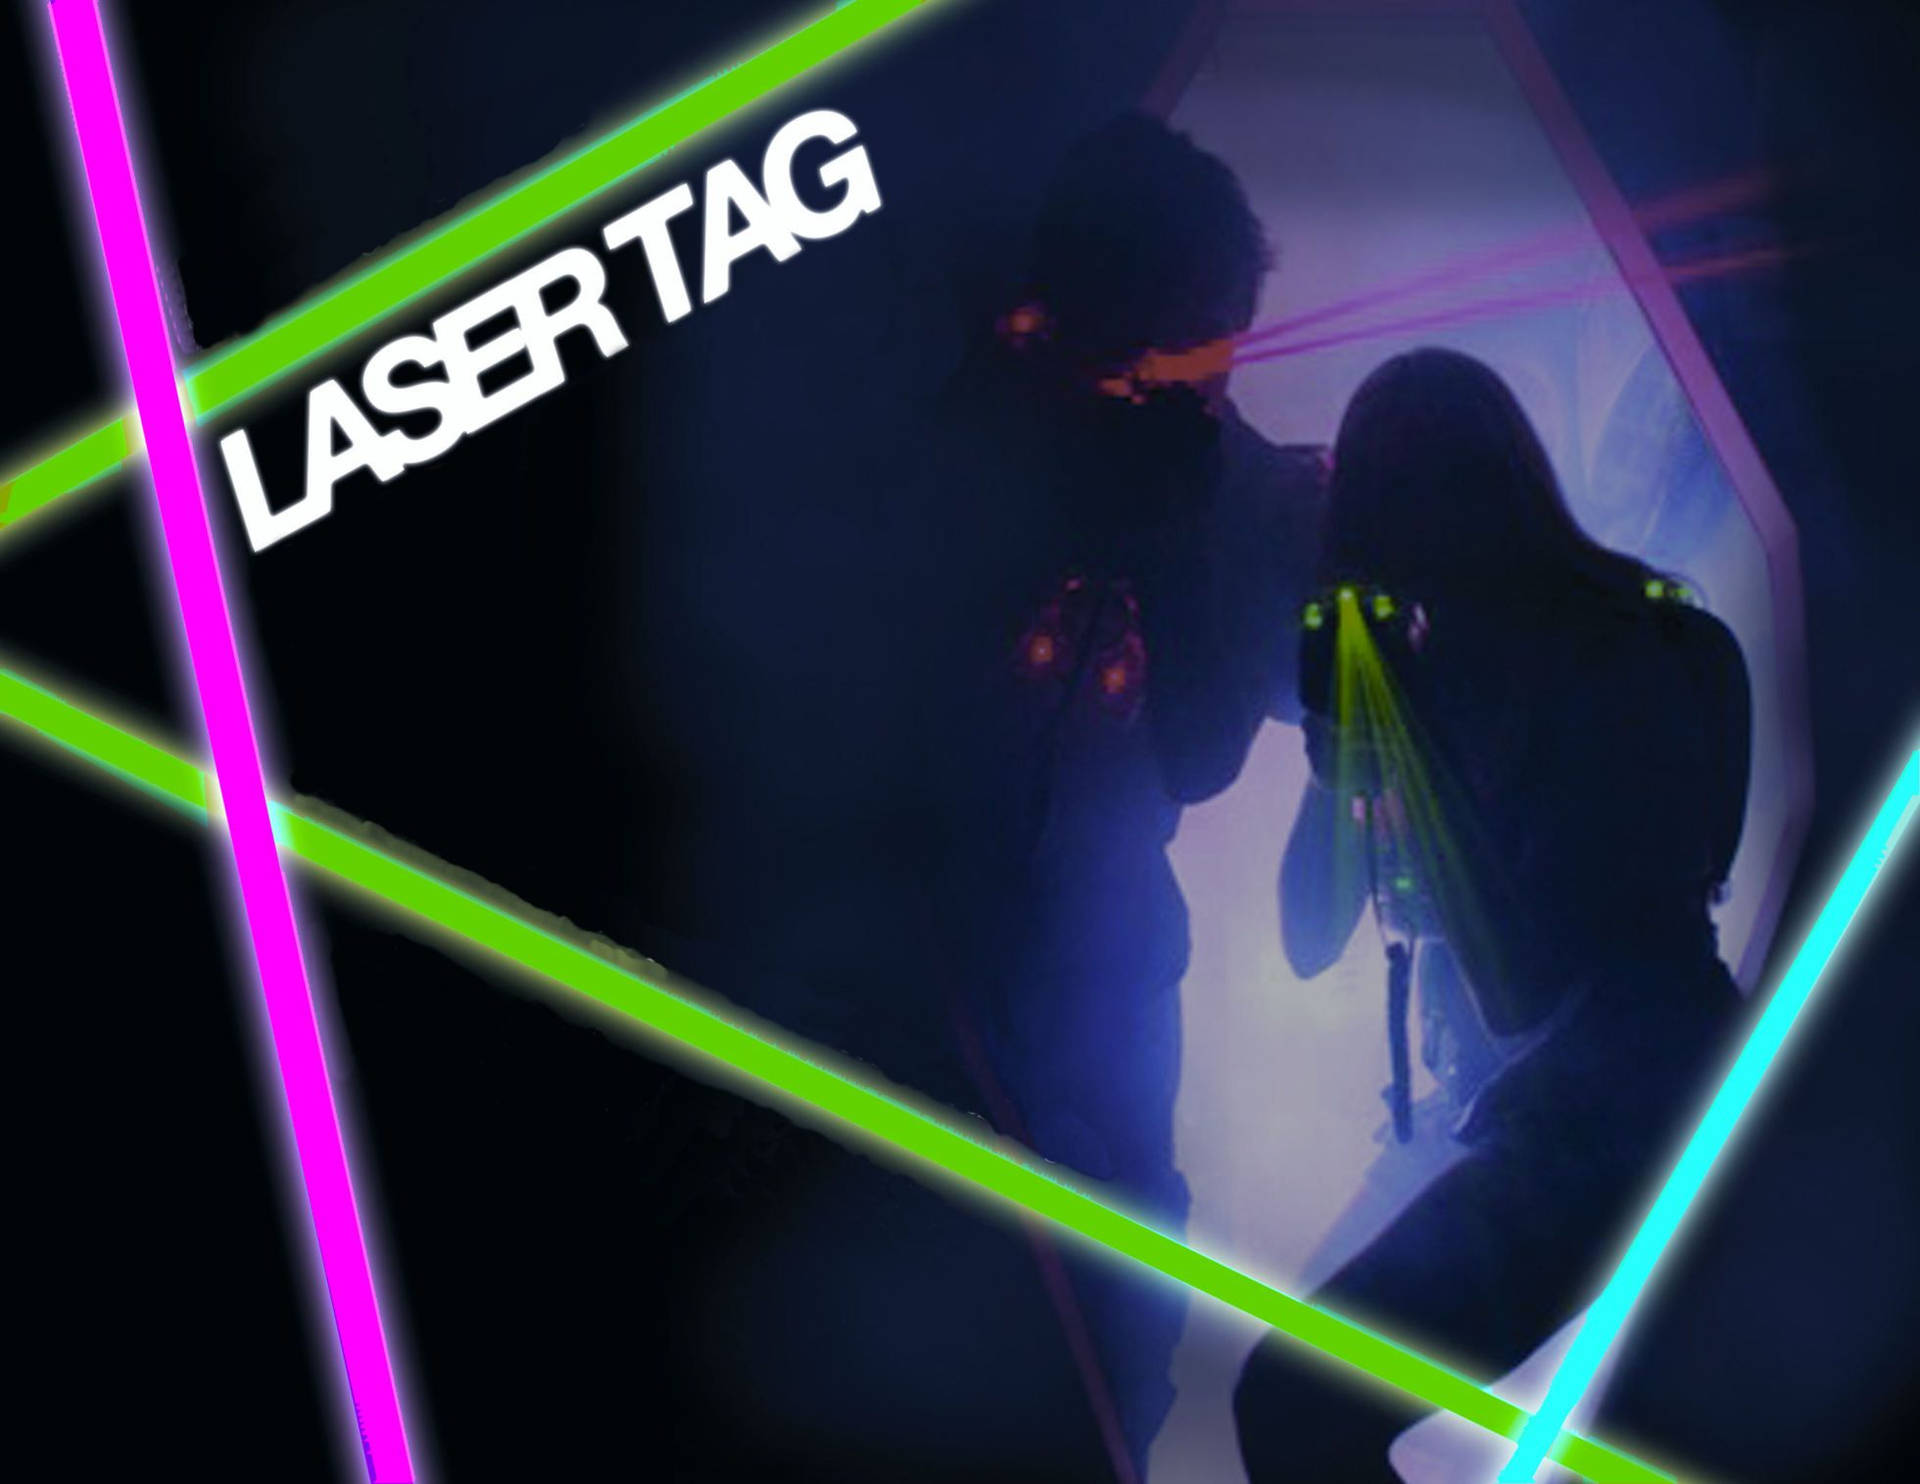 Laser Tag Background Wallpaper